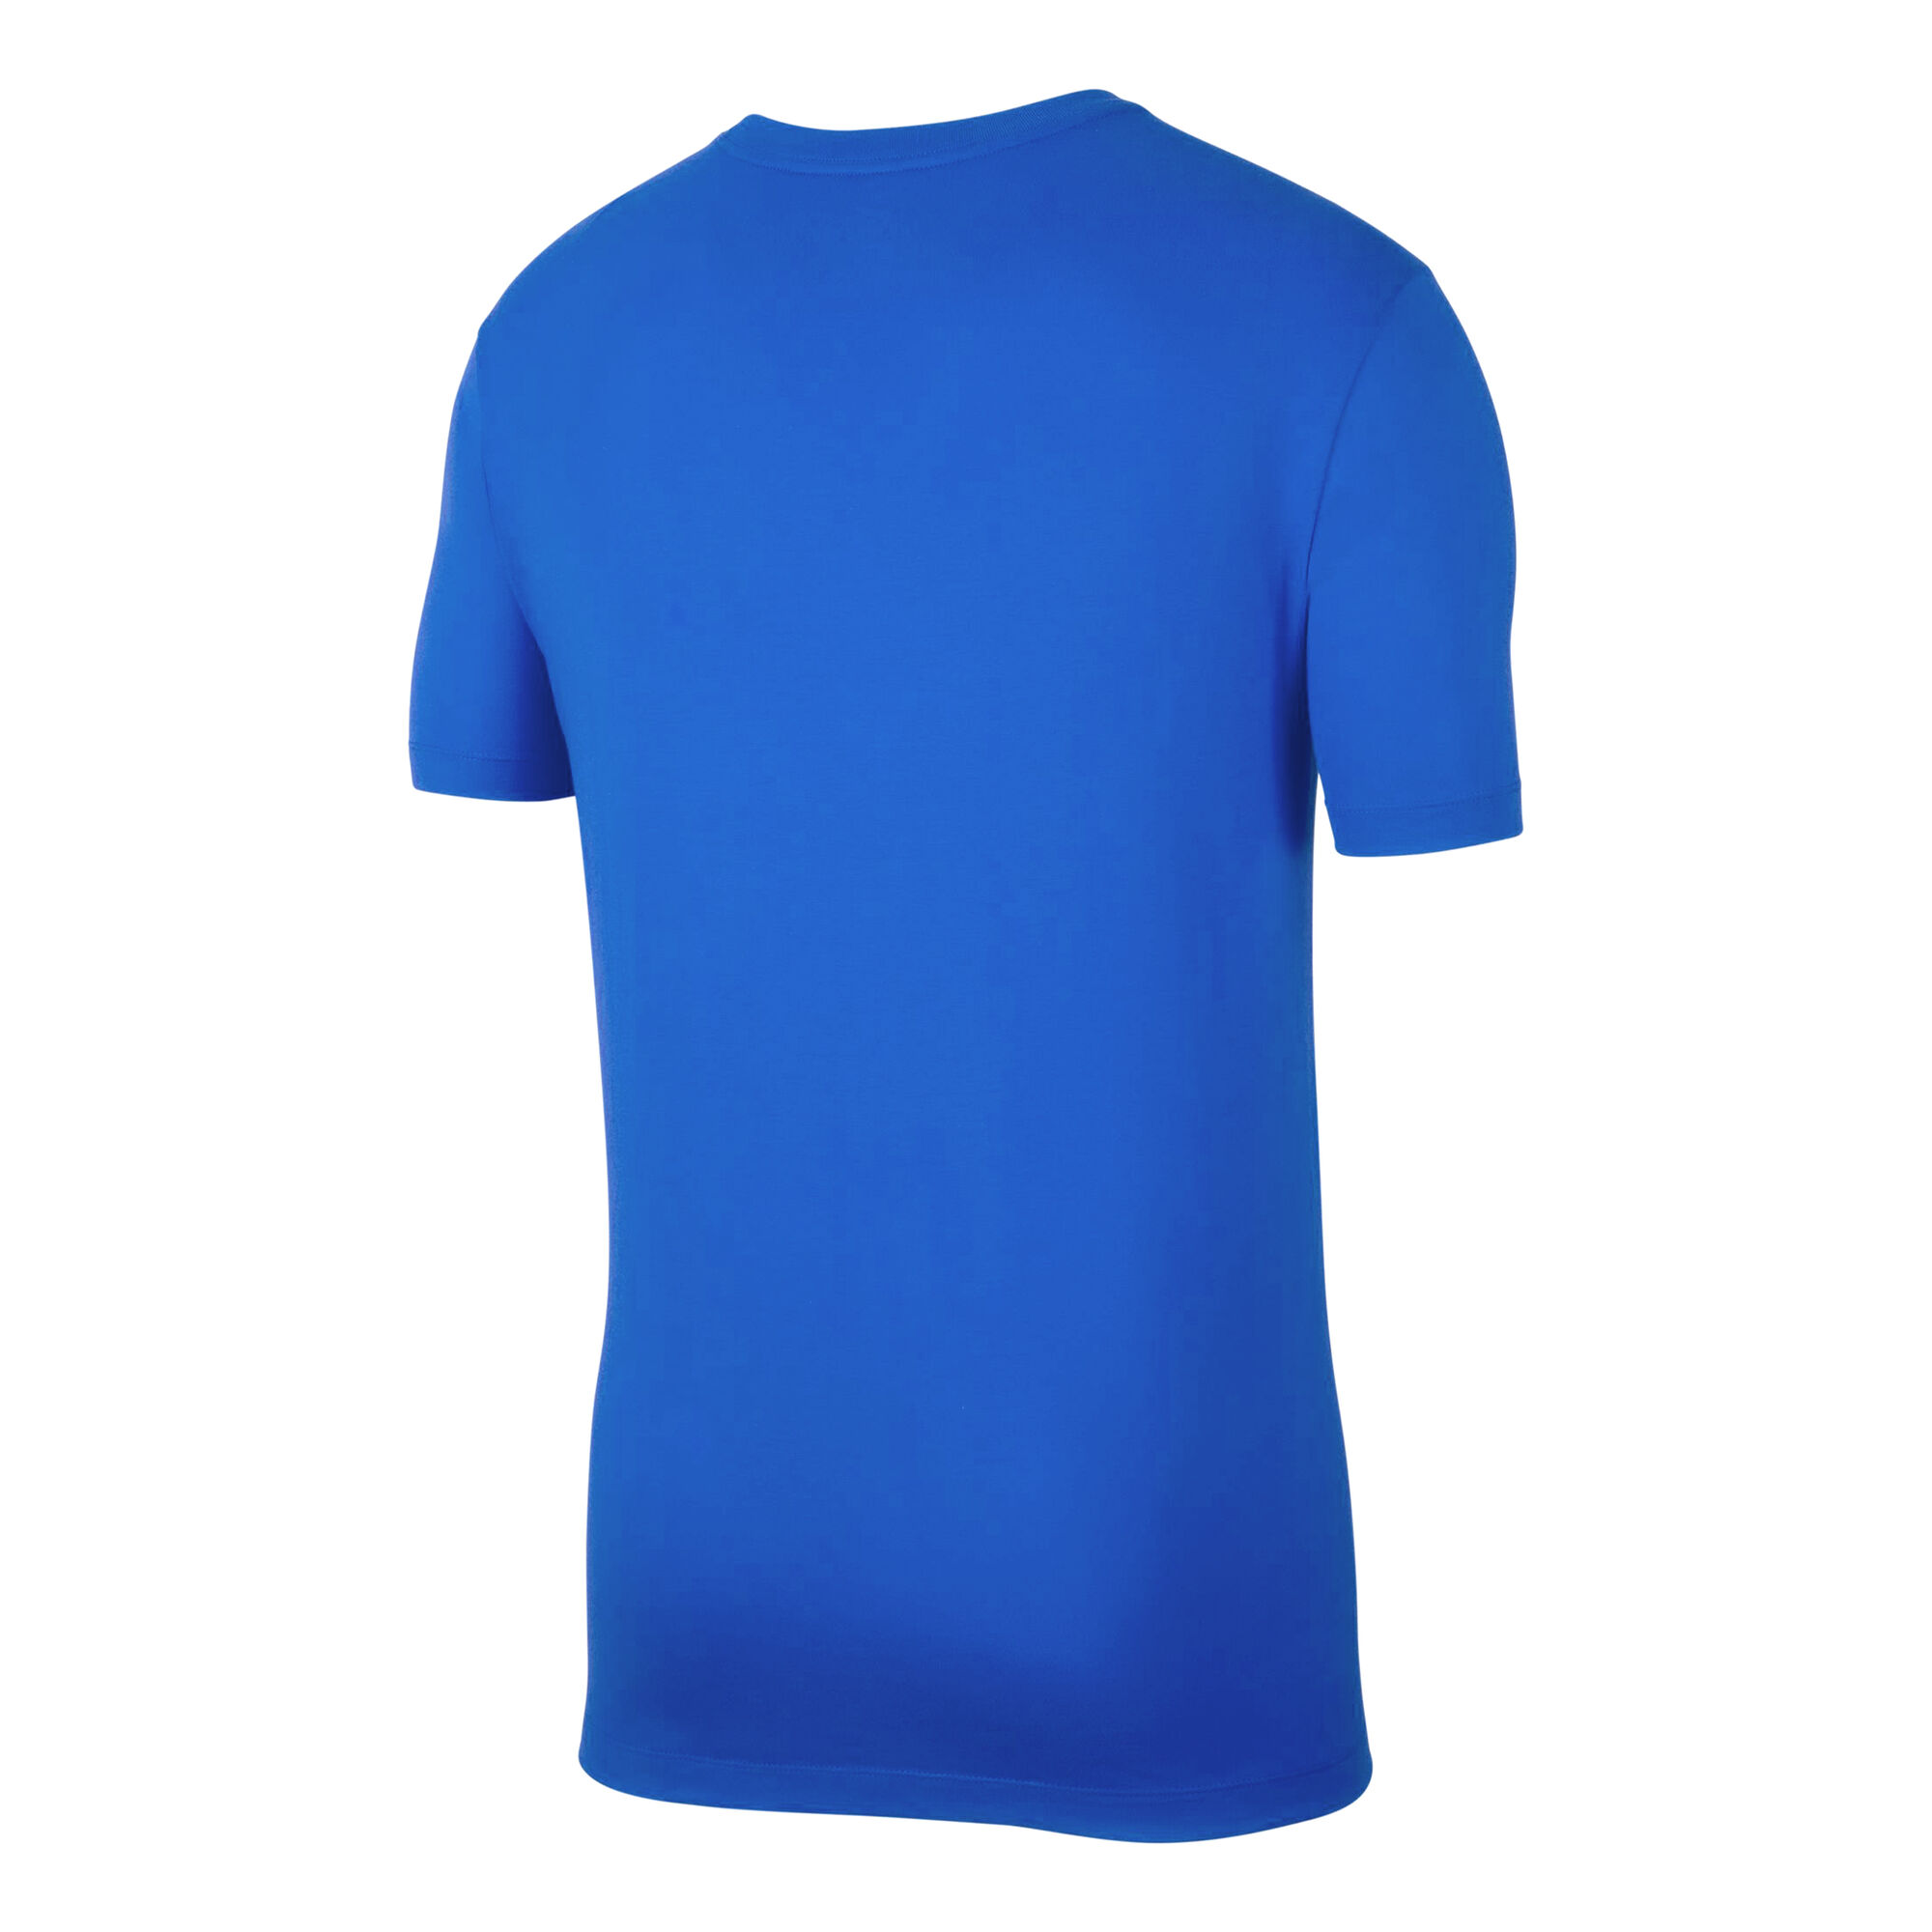 buy Nike Sportswear Club T-Shirt Men - Blue online | Tennis-Point